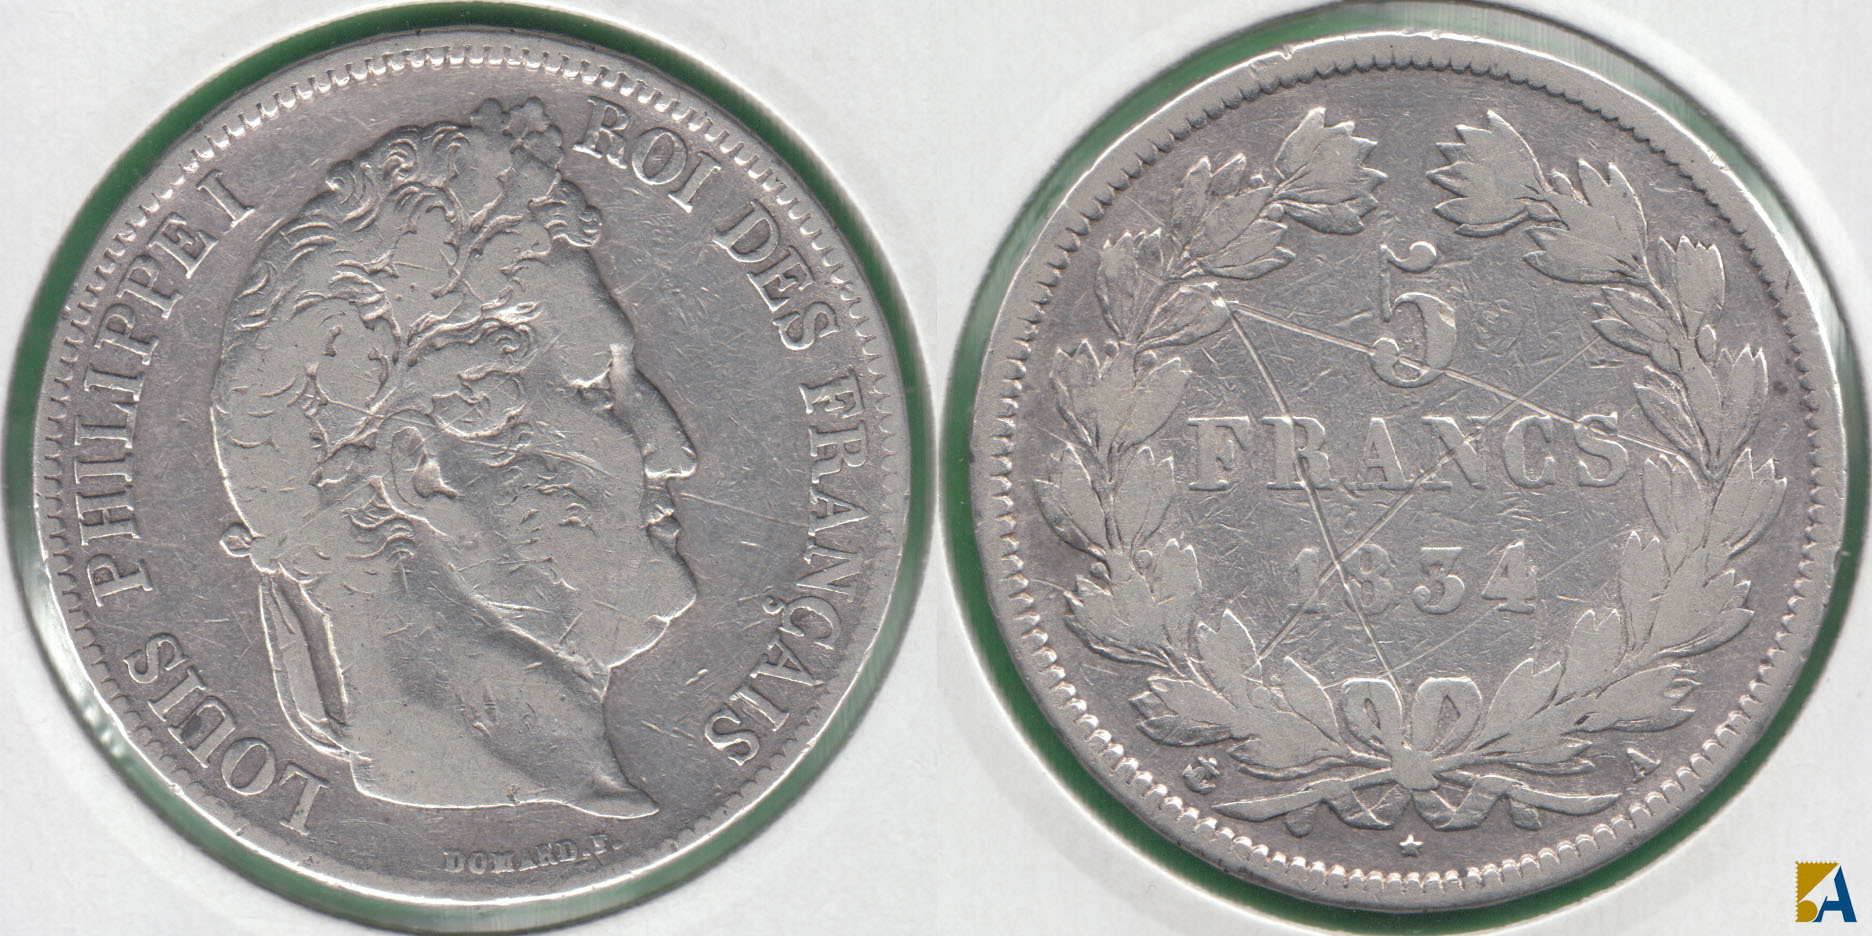 FRANCIA - FRANCE. 5 FRANCOS (FRANCS) DE 1834 A. PLATA 0.900.